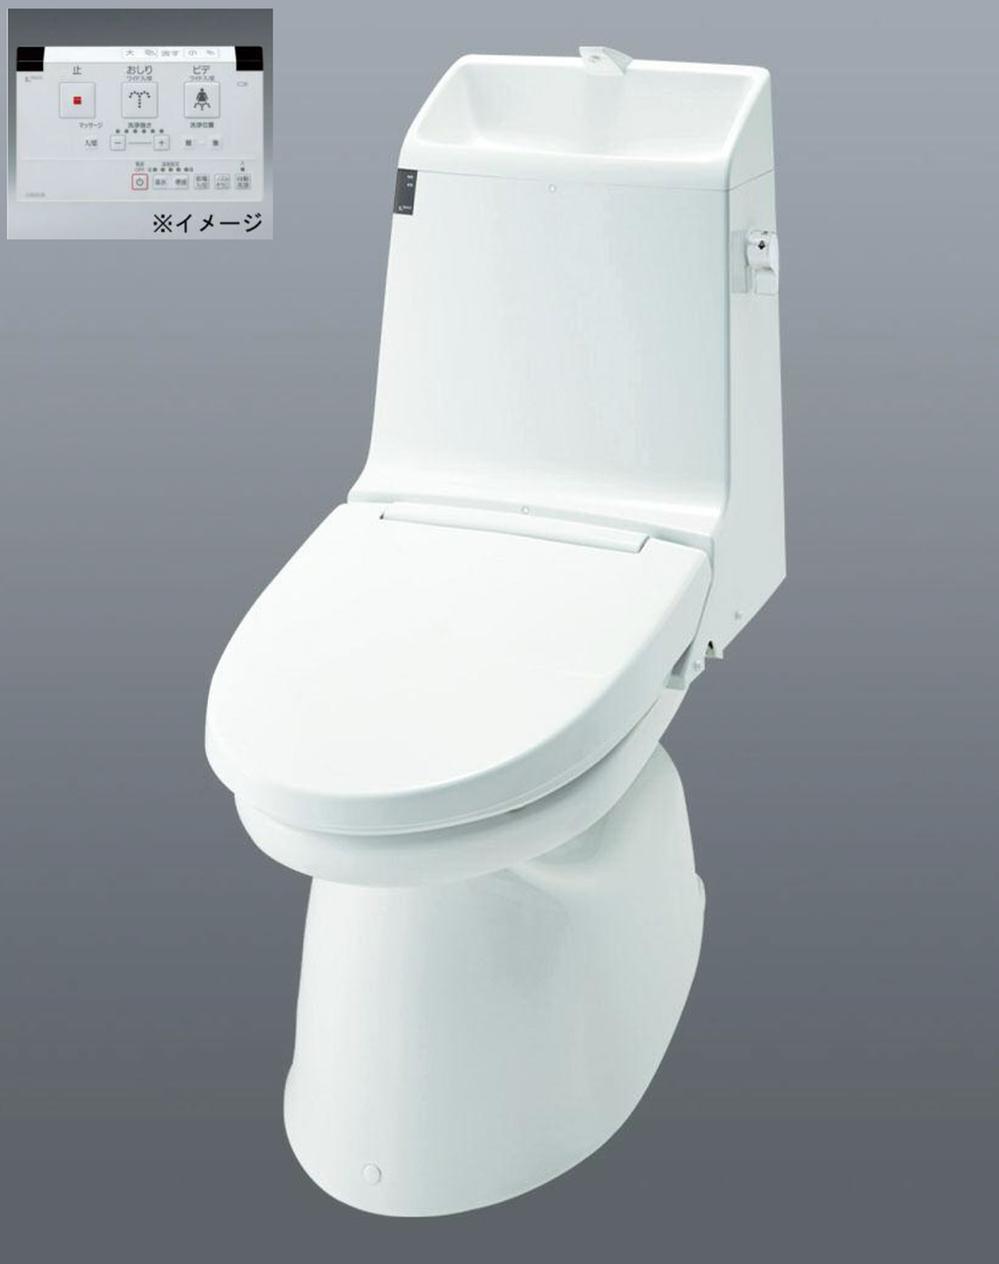 Toilet.  ・ Warm water washing heating toilet seat